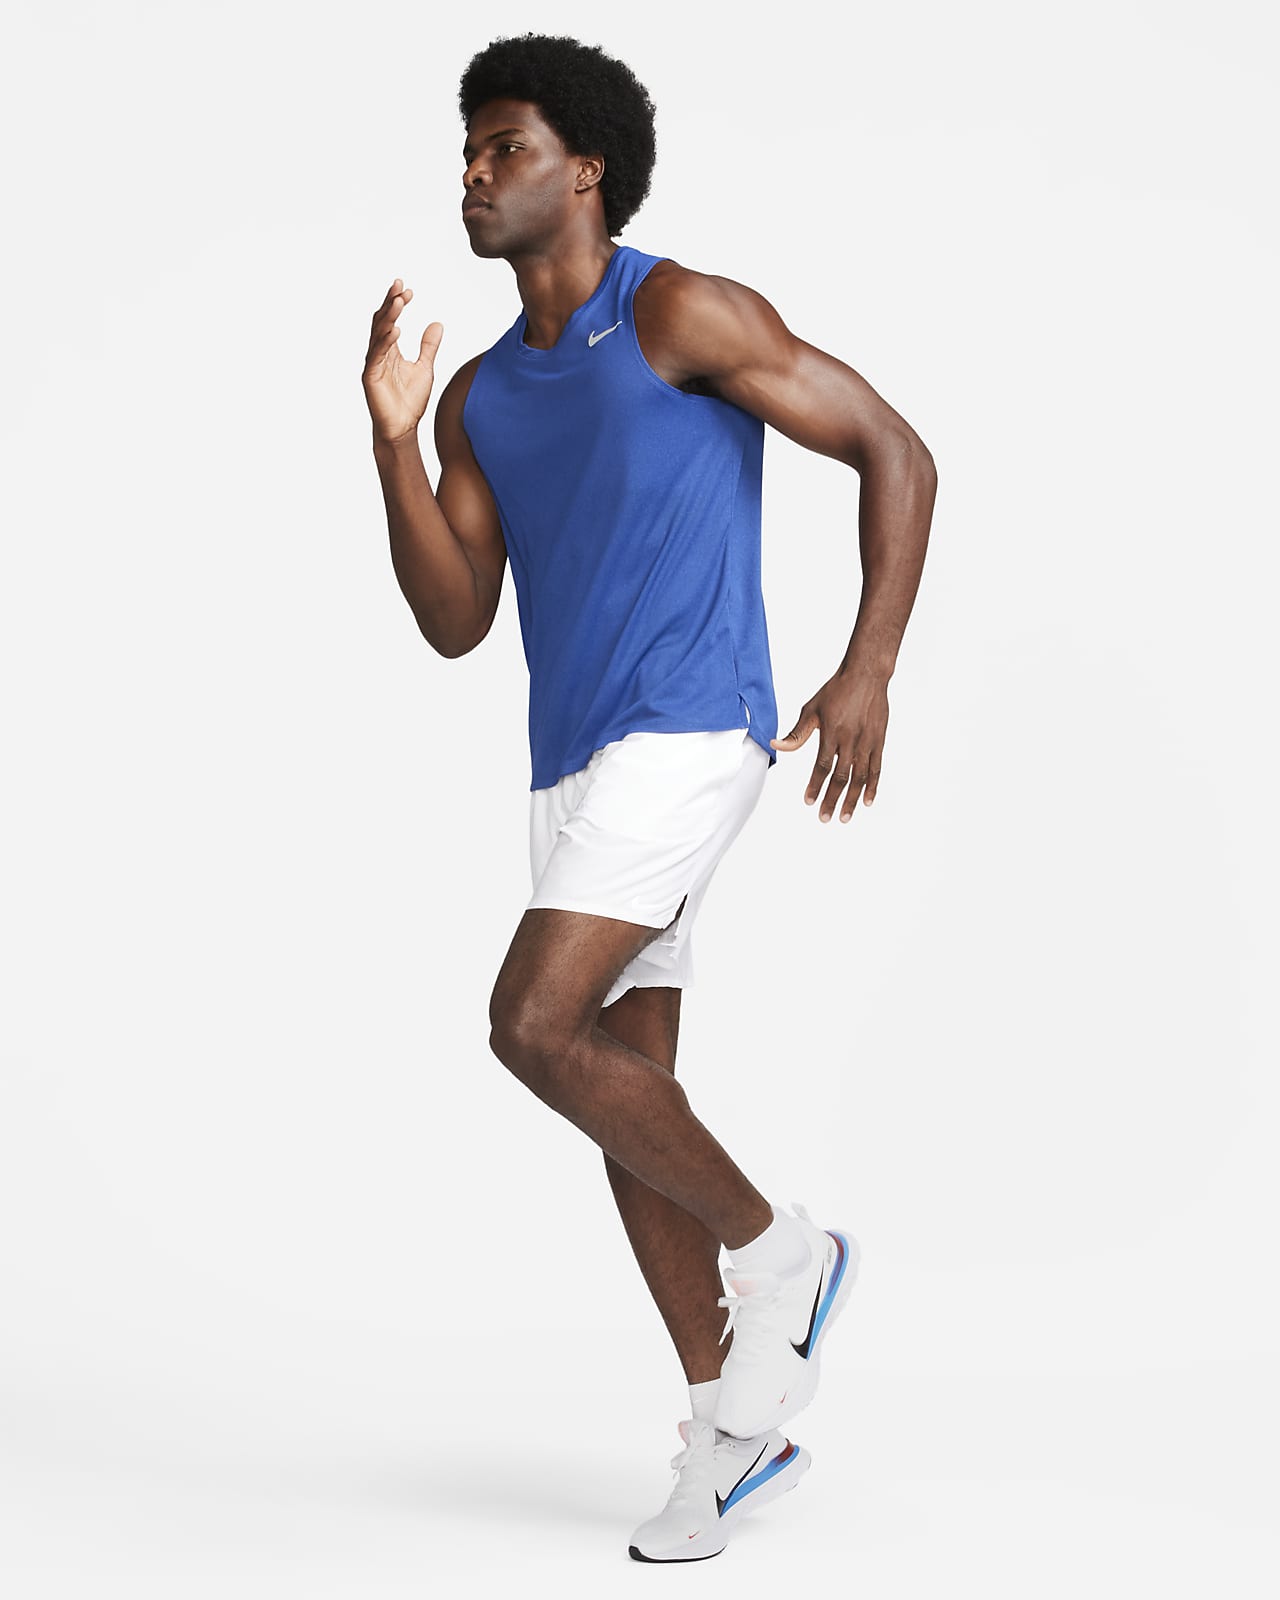 Débardeur Nike Dri-FIT - Débardeurs - Homme - Fitness